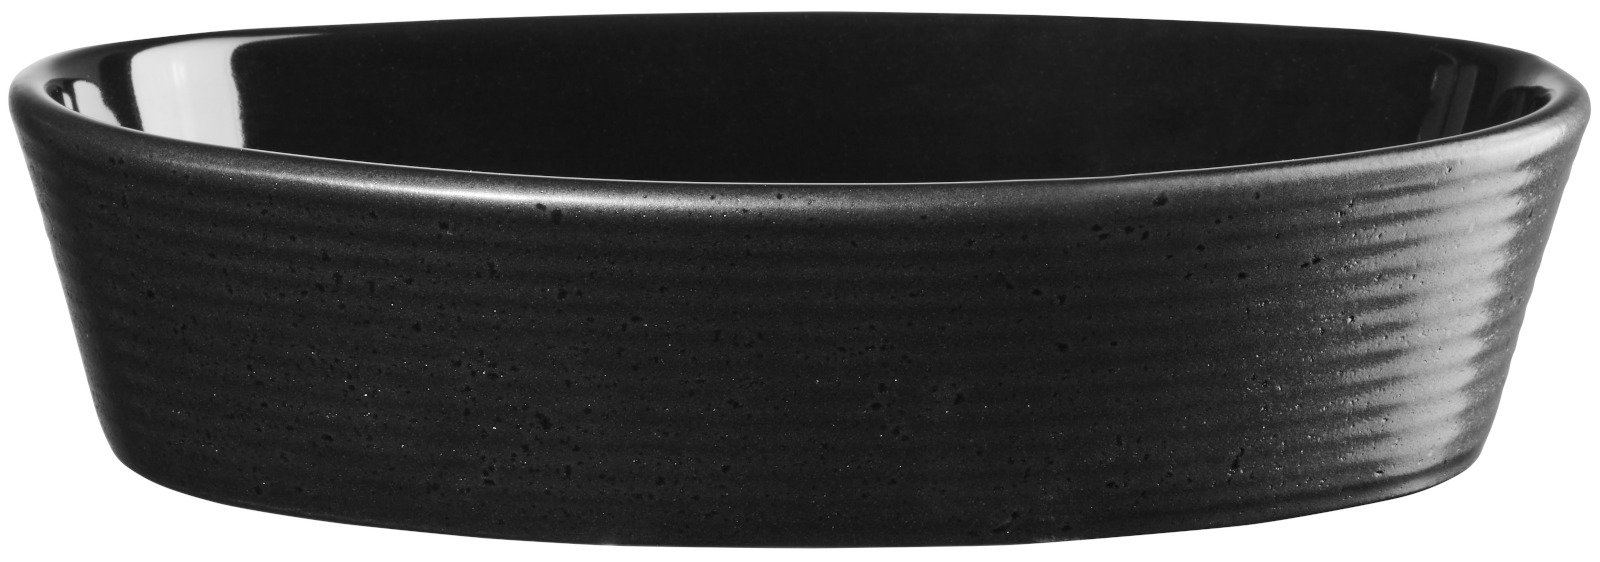 ASA kitchen'art Auflaufform oval black 20cm